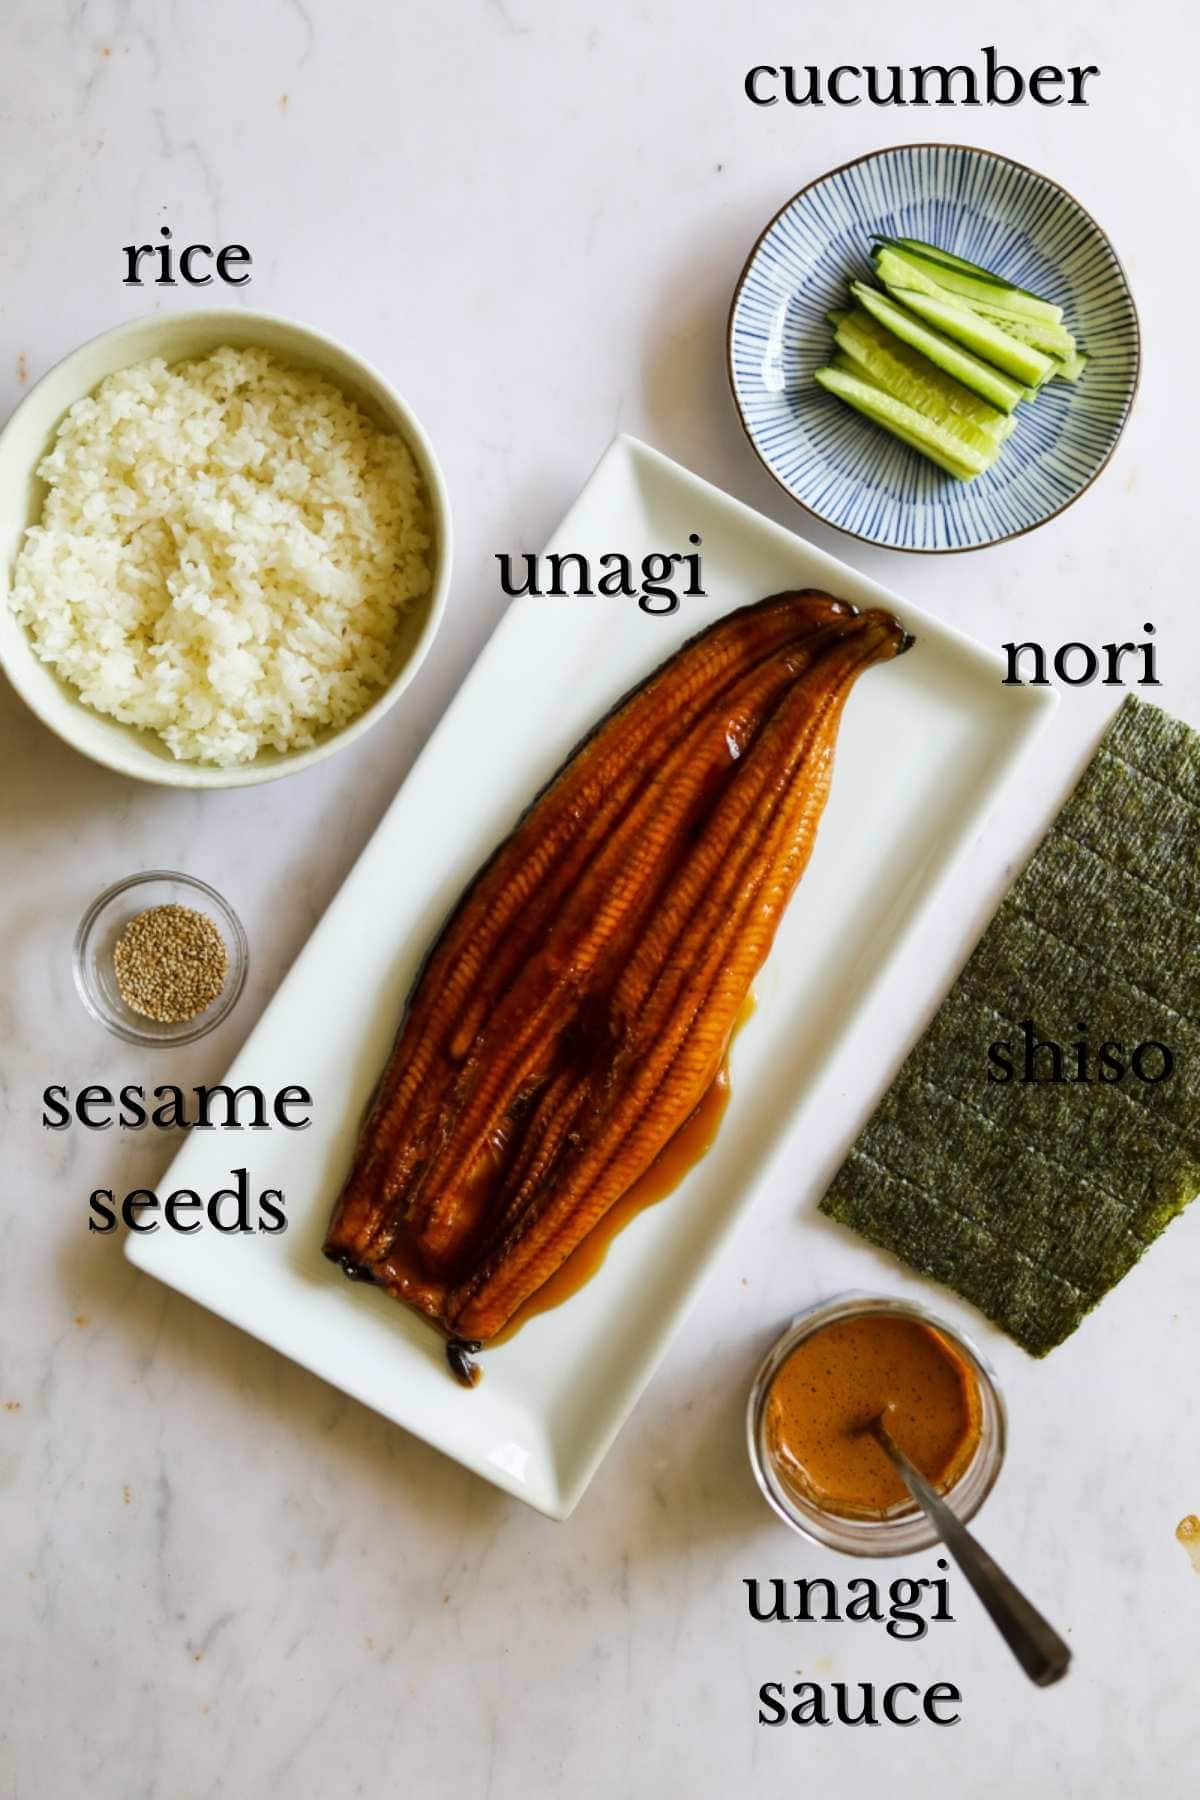 Ingredients for unagi sushi eel hand roll.